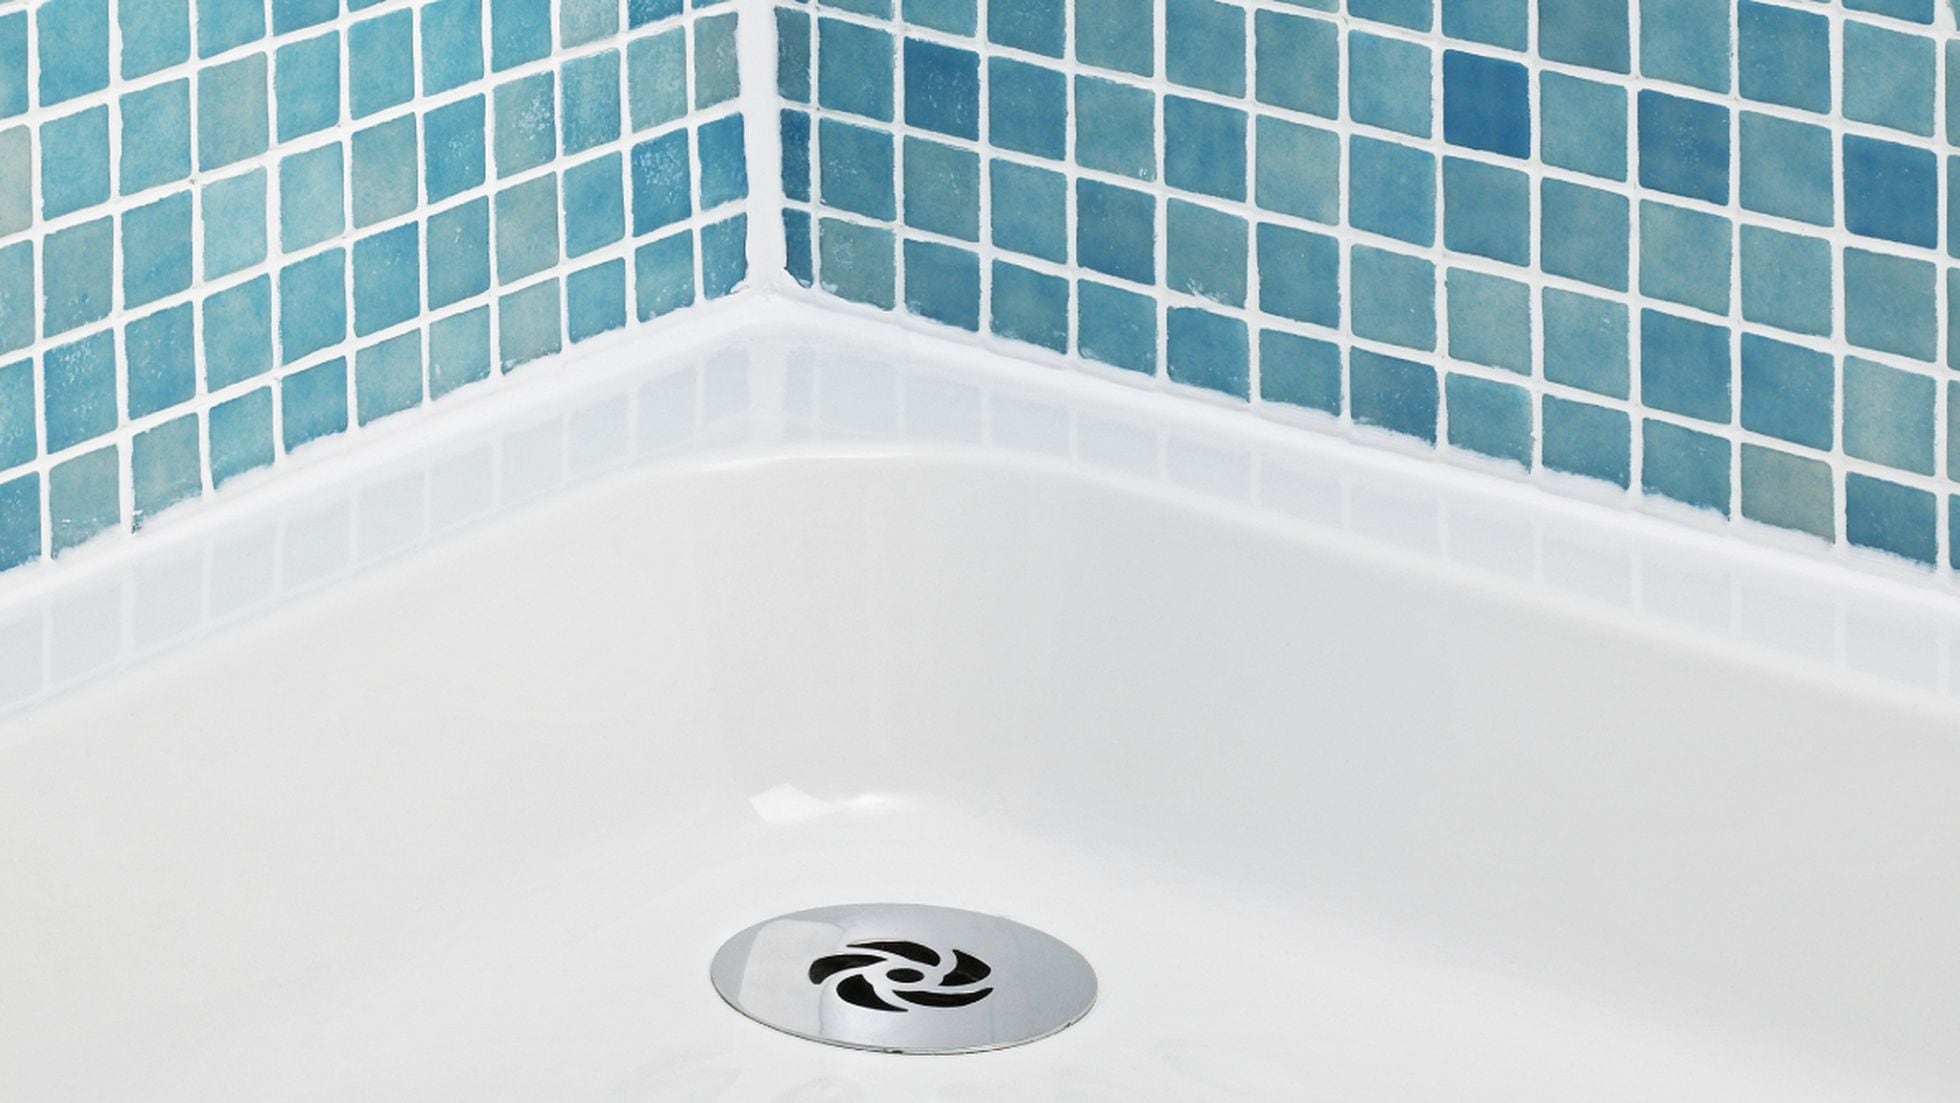 ¿El moho está infestando su cuarto de baño? Elimine el moho fácilmente con  HG 